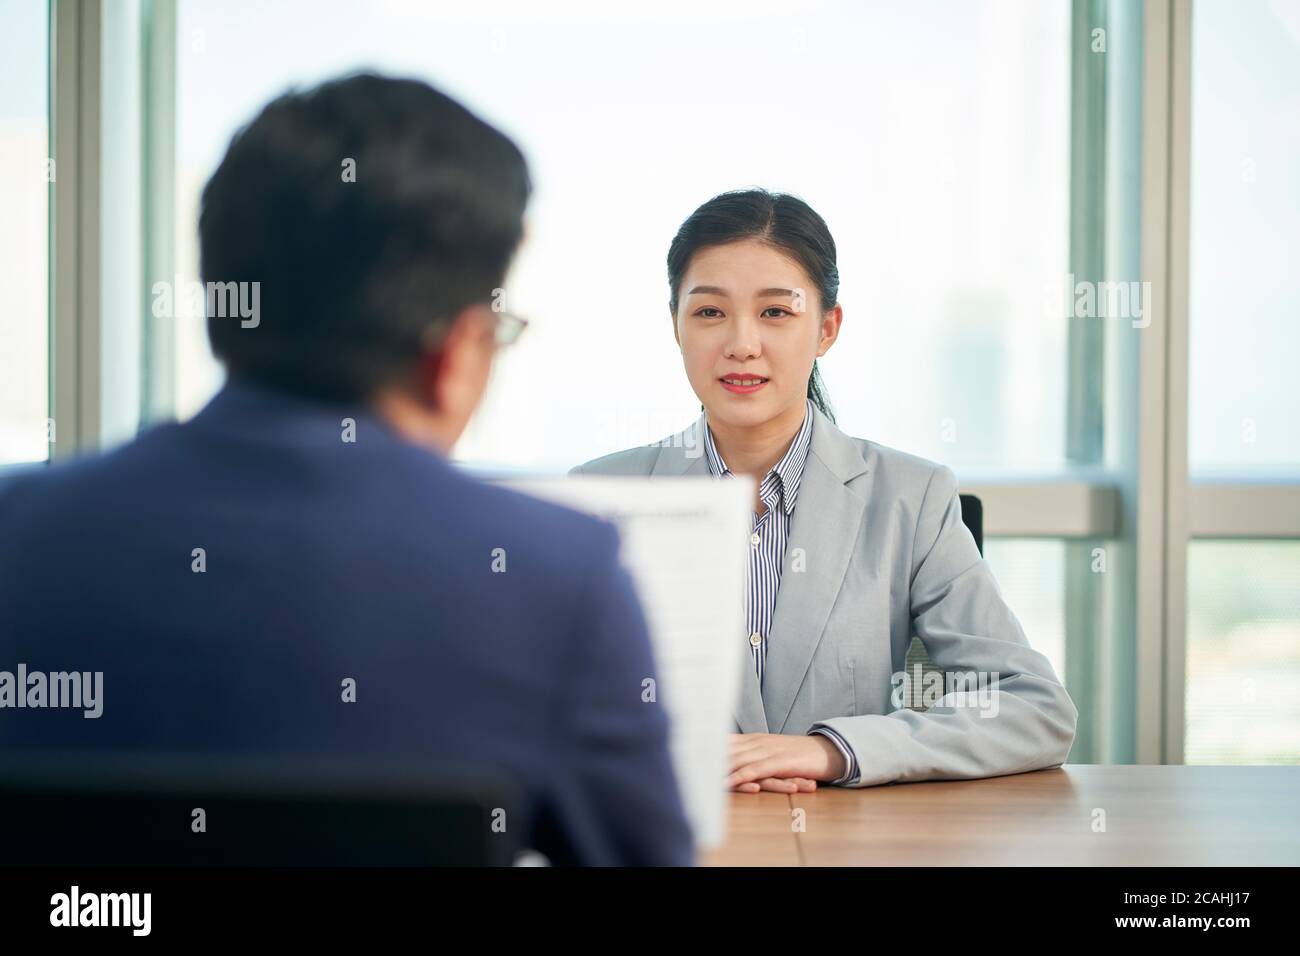 Junge asiatische Geschäftsfrau auf der Suche nach Job wird von Human Resources Manager interviewt Stockfoto